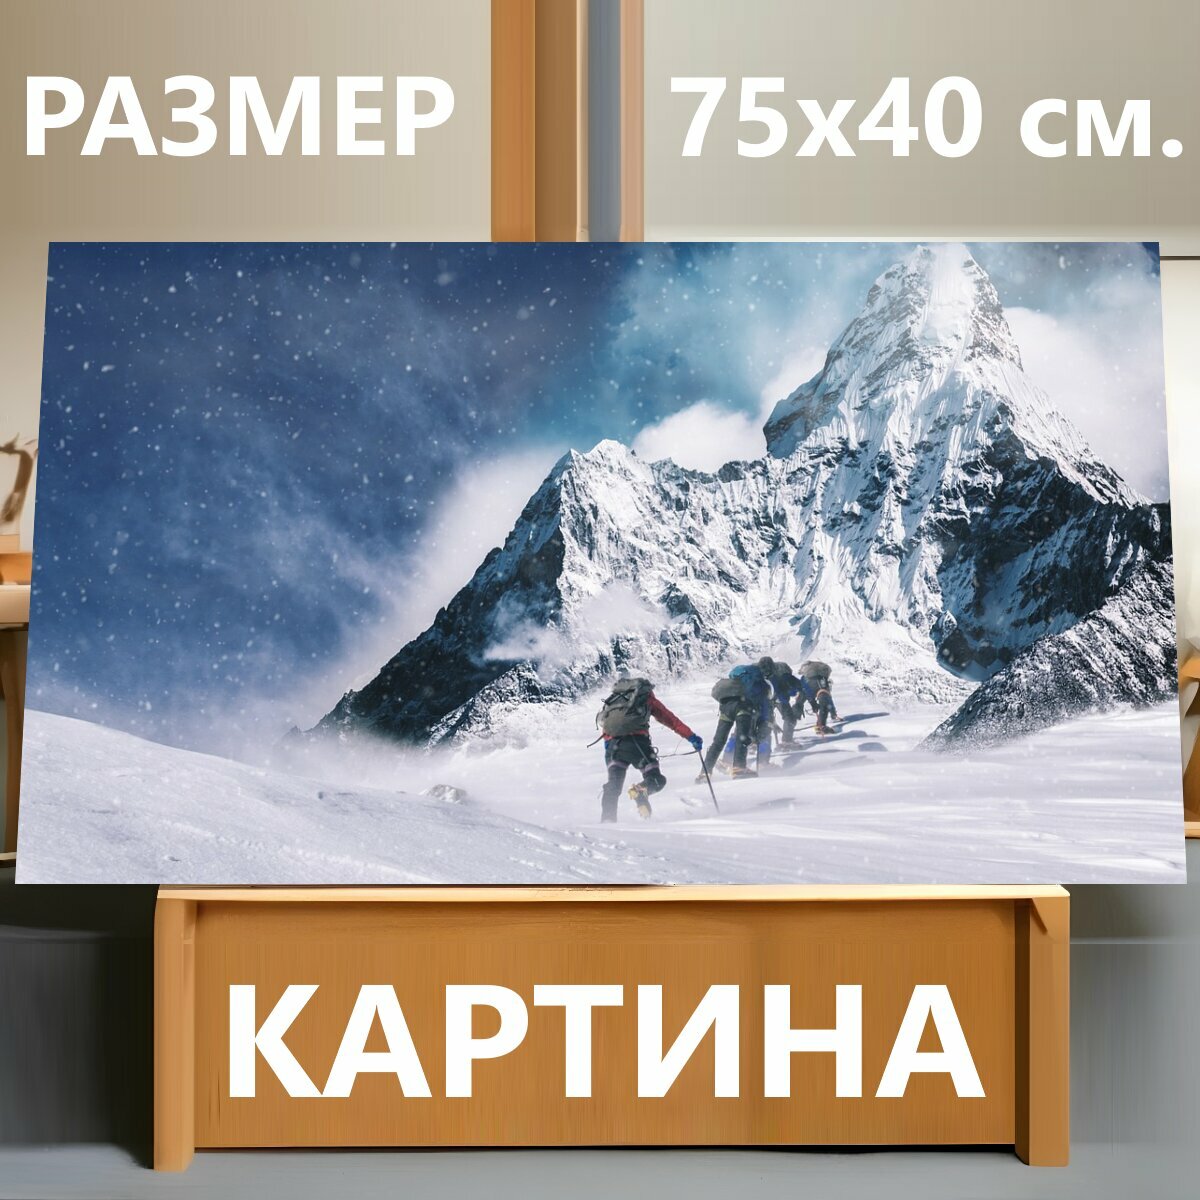 Картина на холсте "Альпинист, гора, альпинизм" на подрамнике 75х40 см. для интерьера